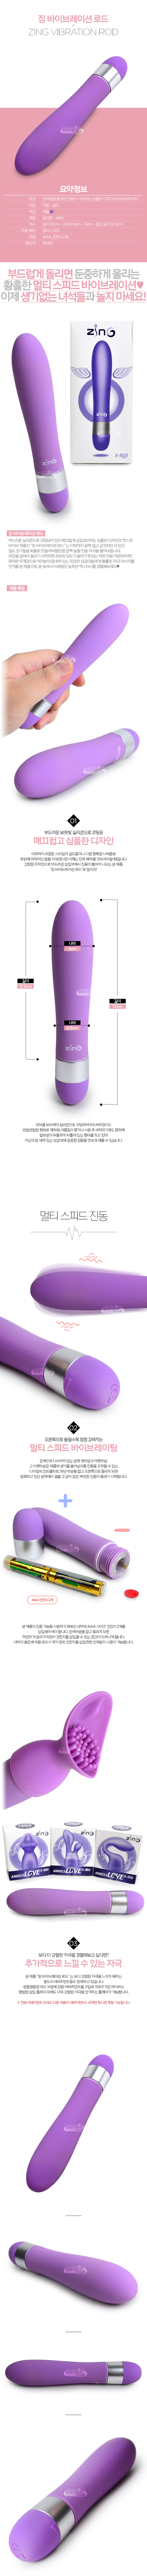 [멀티 스피드] 징 바이브레이션 로드(Zing Vibration Rod)